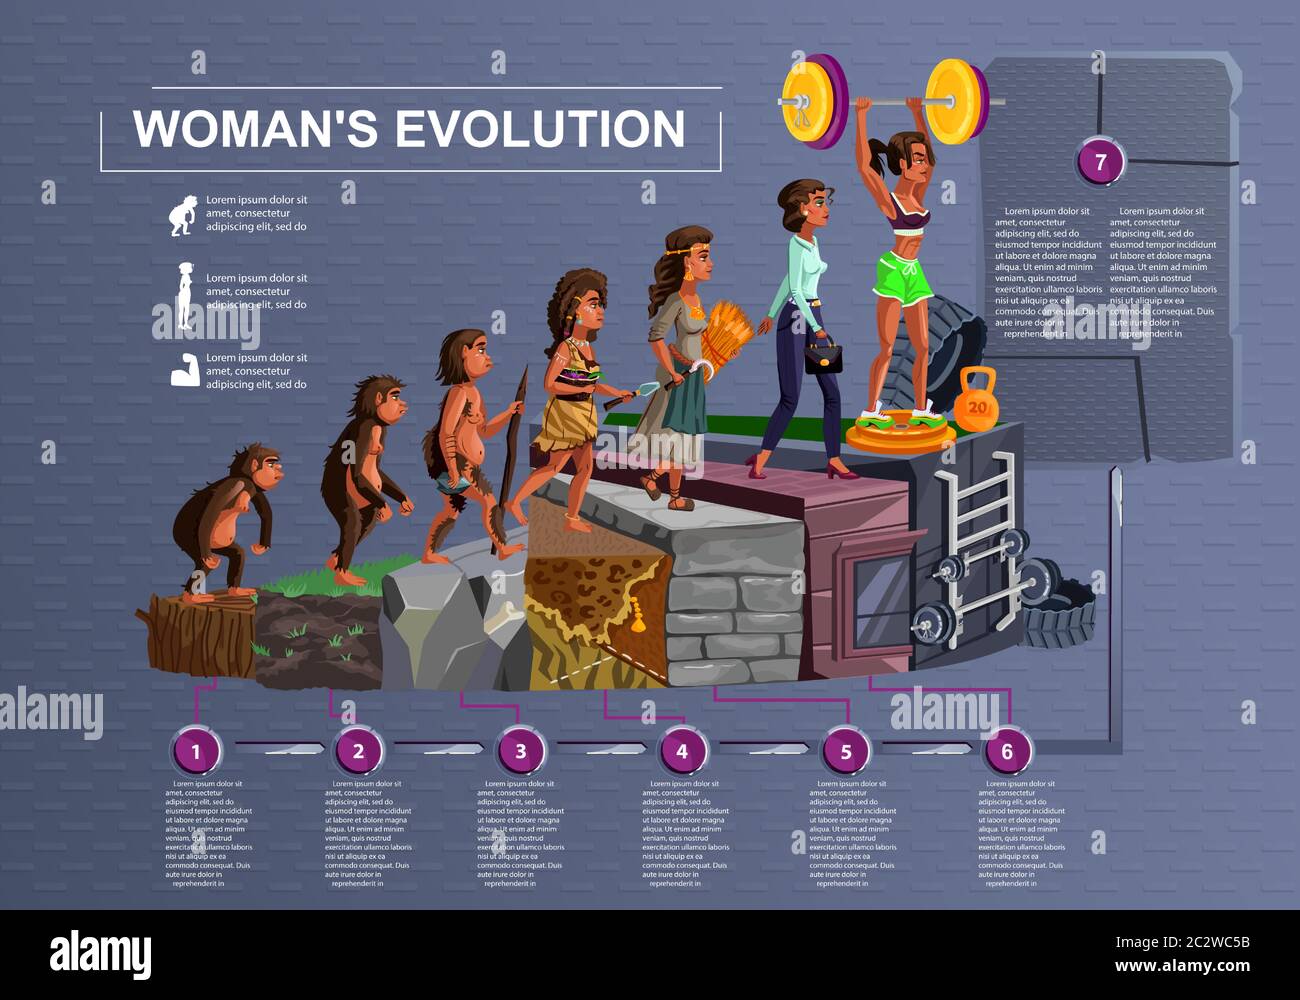 Evolución de la mujer línea de tiempo vector ilustración de dibujos  animados concepto Desarrollo femenino proceso de mono, erectus primate,  Edad de Piedra, agricultor a fas moderno Imagen Vector de stock -